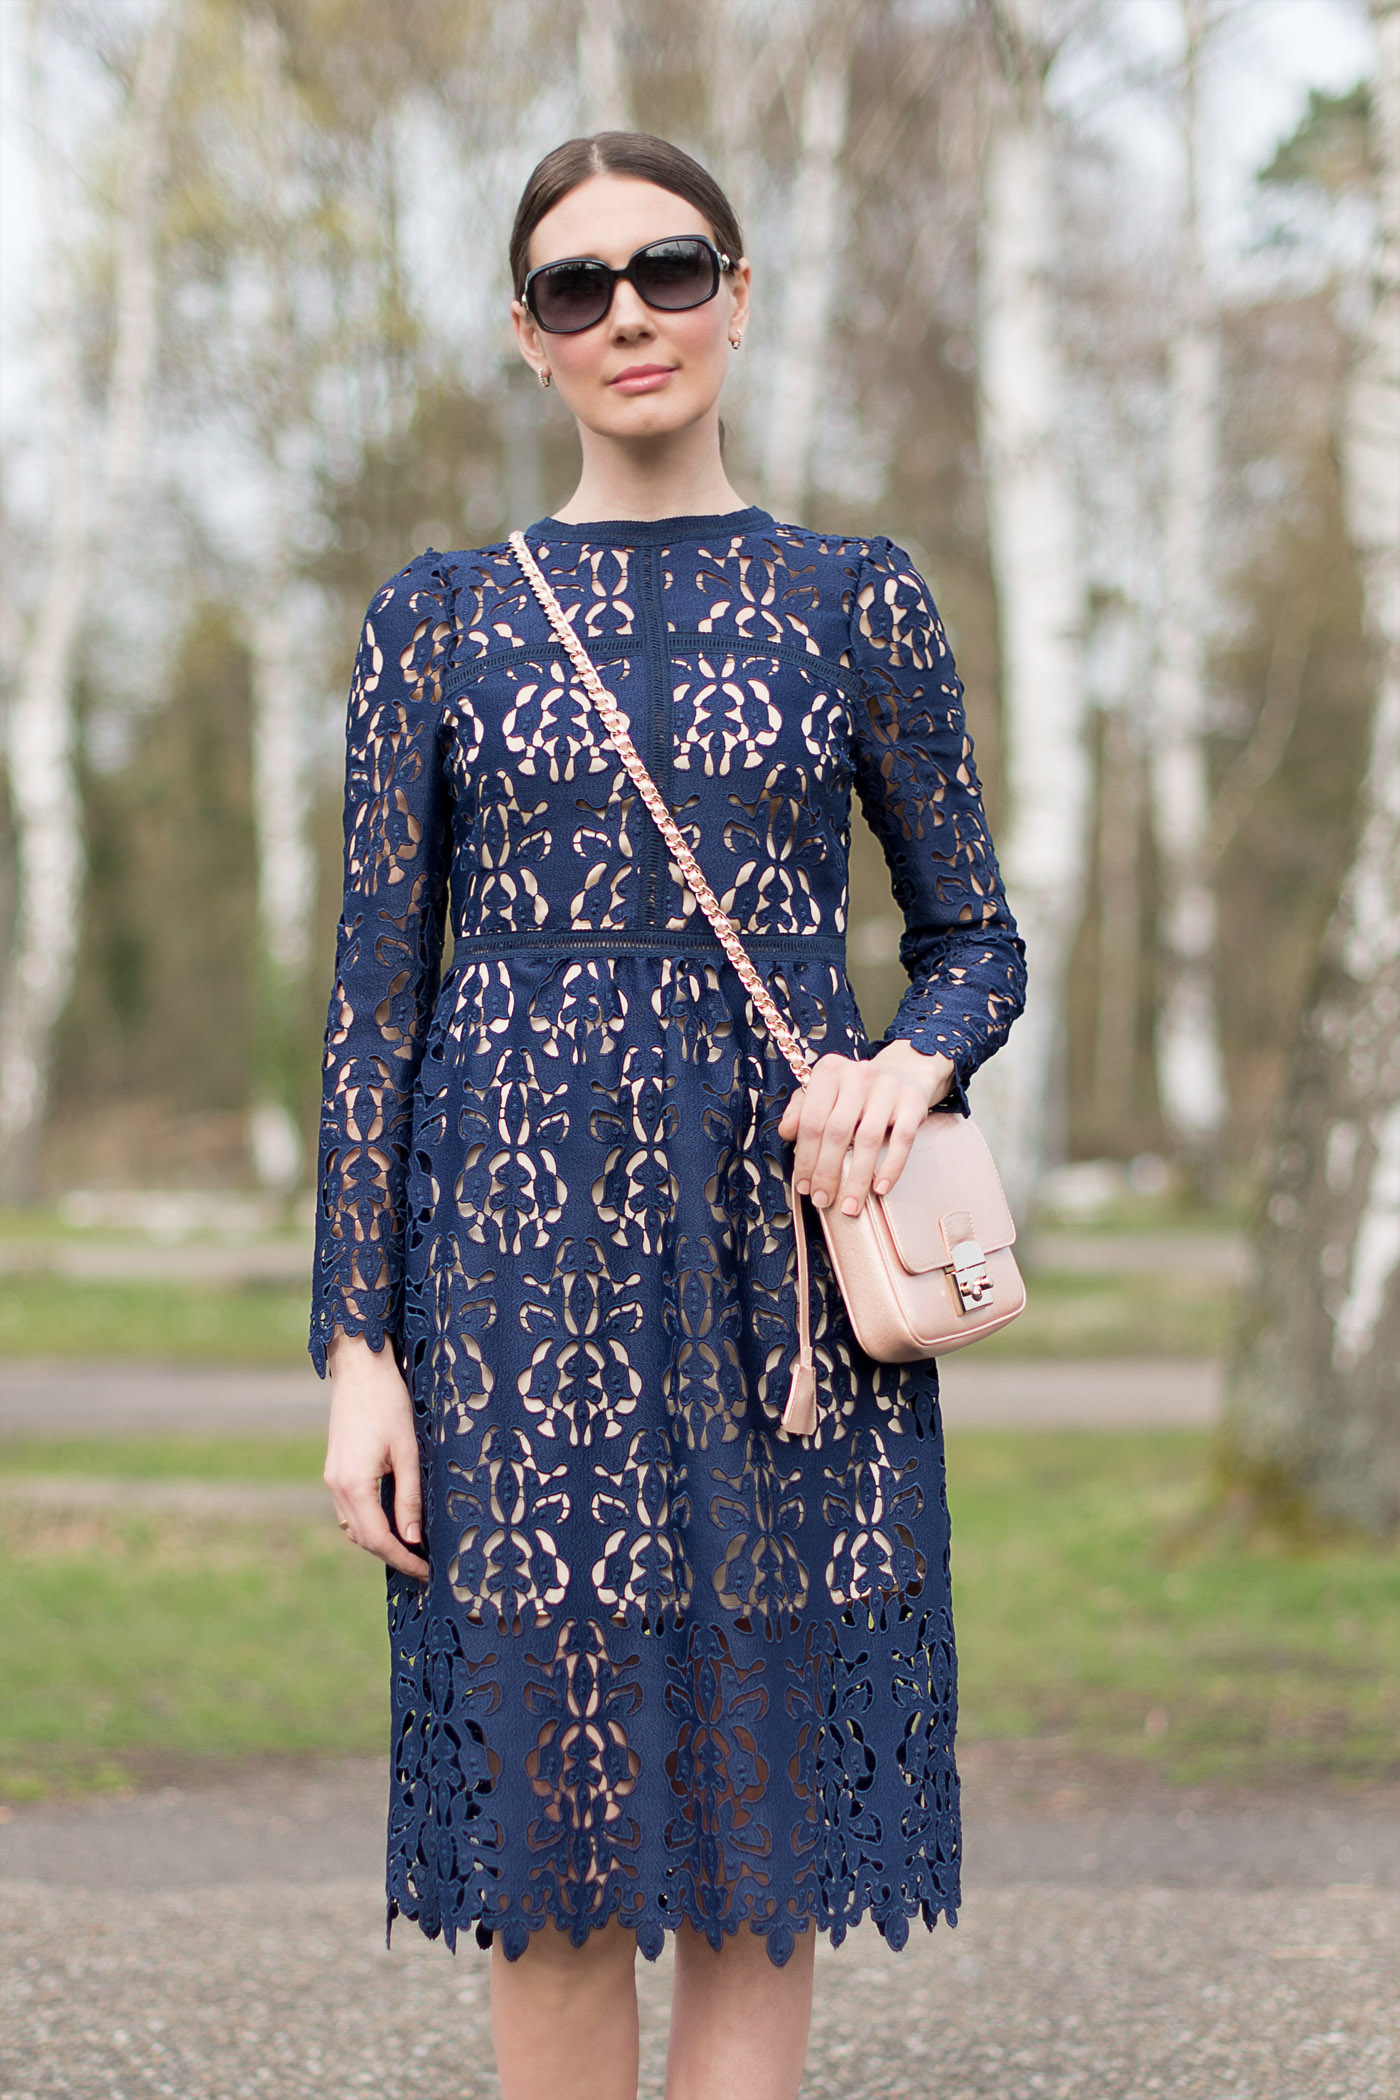 Zara-Lace-Dress-michaelkors-Coccinelle-fashionblog-9